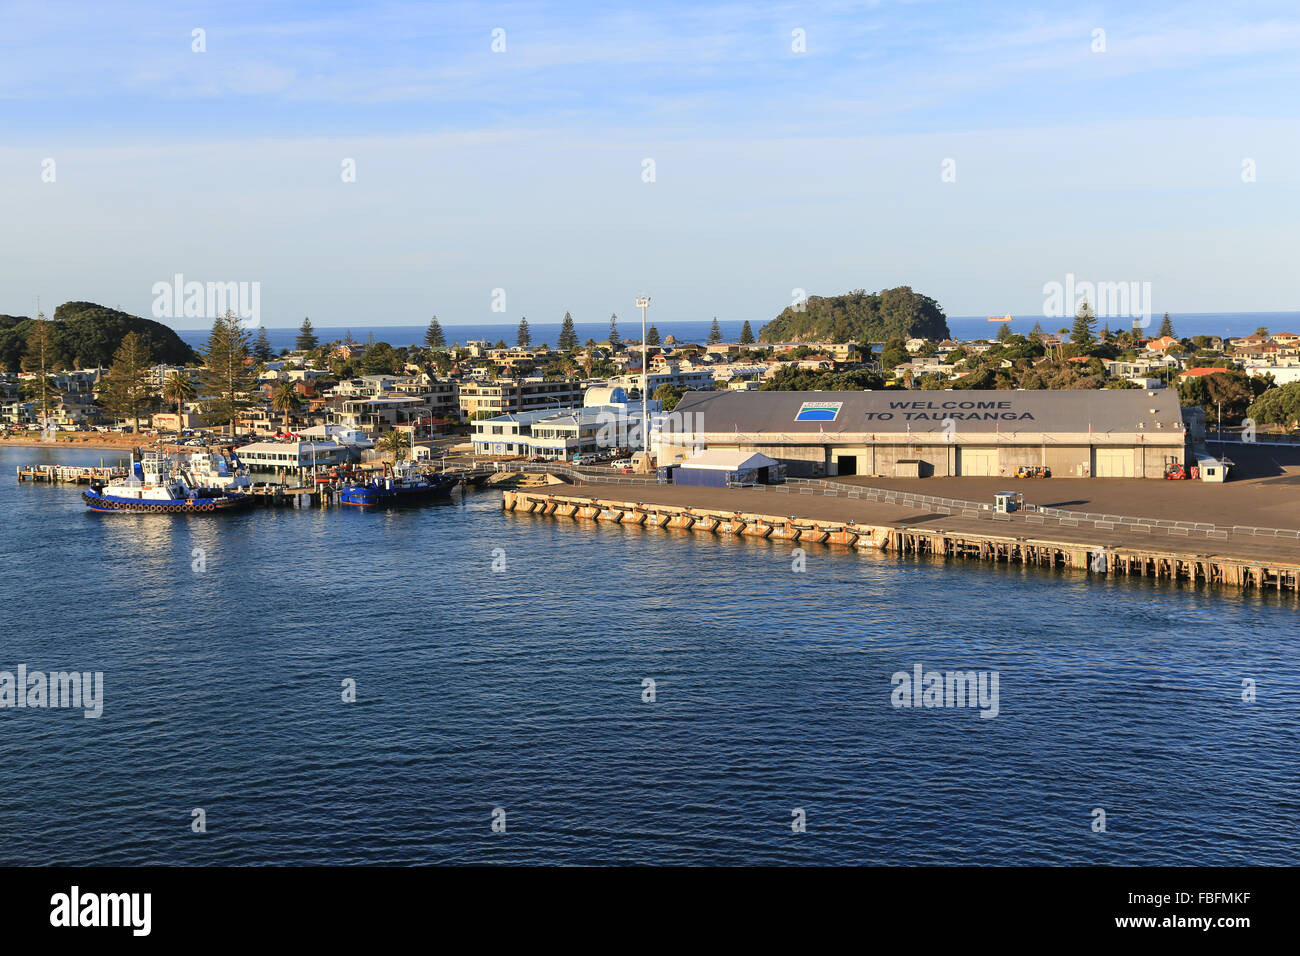 Benvenuti al segno di Tauranga saluta la nave di crociera visitatori presso il porto di Tauranga con tug barche attraccate al dock. Foto Stock